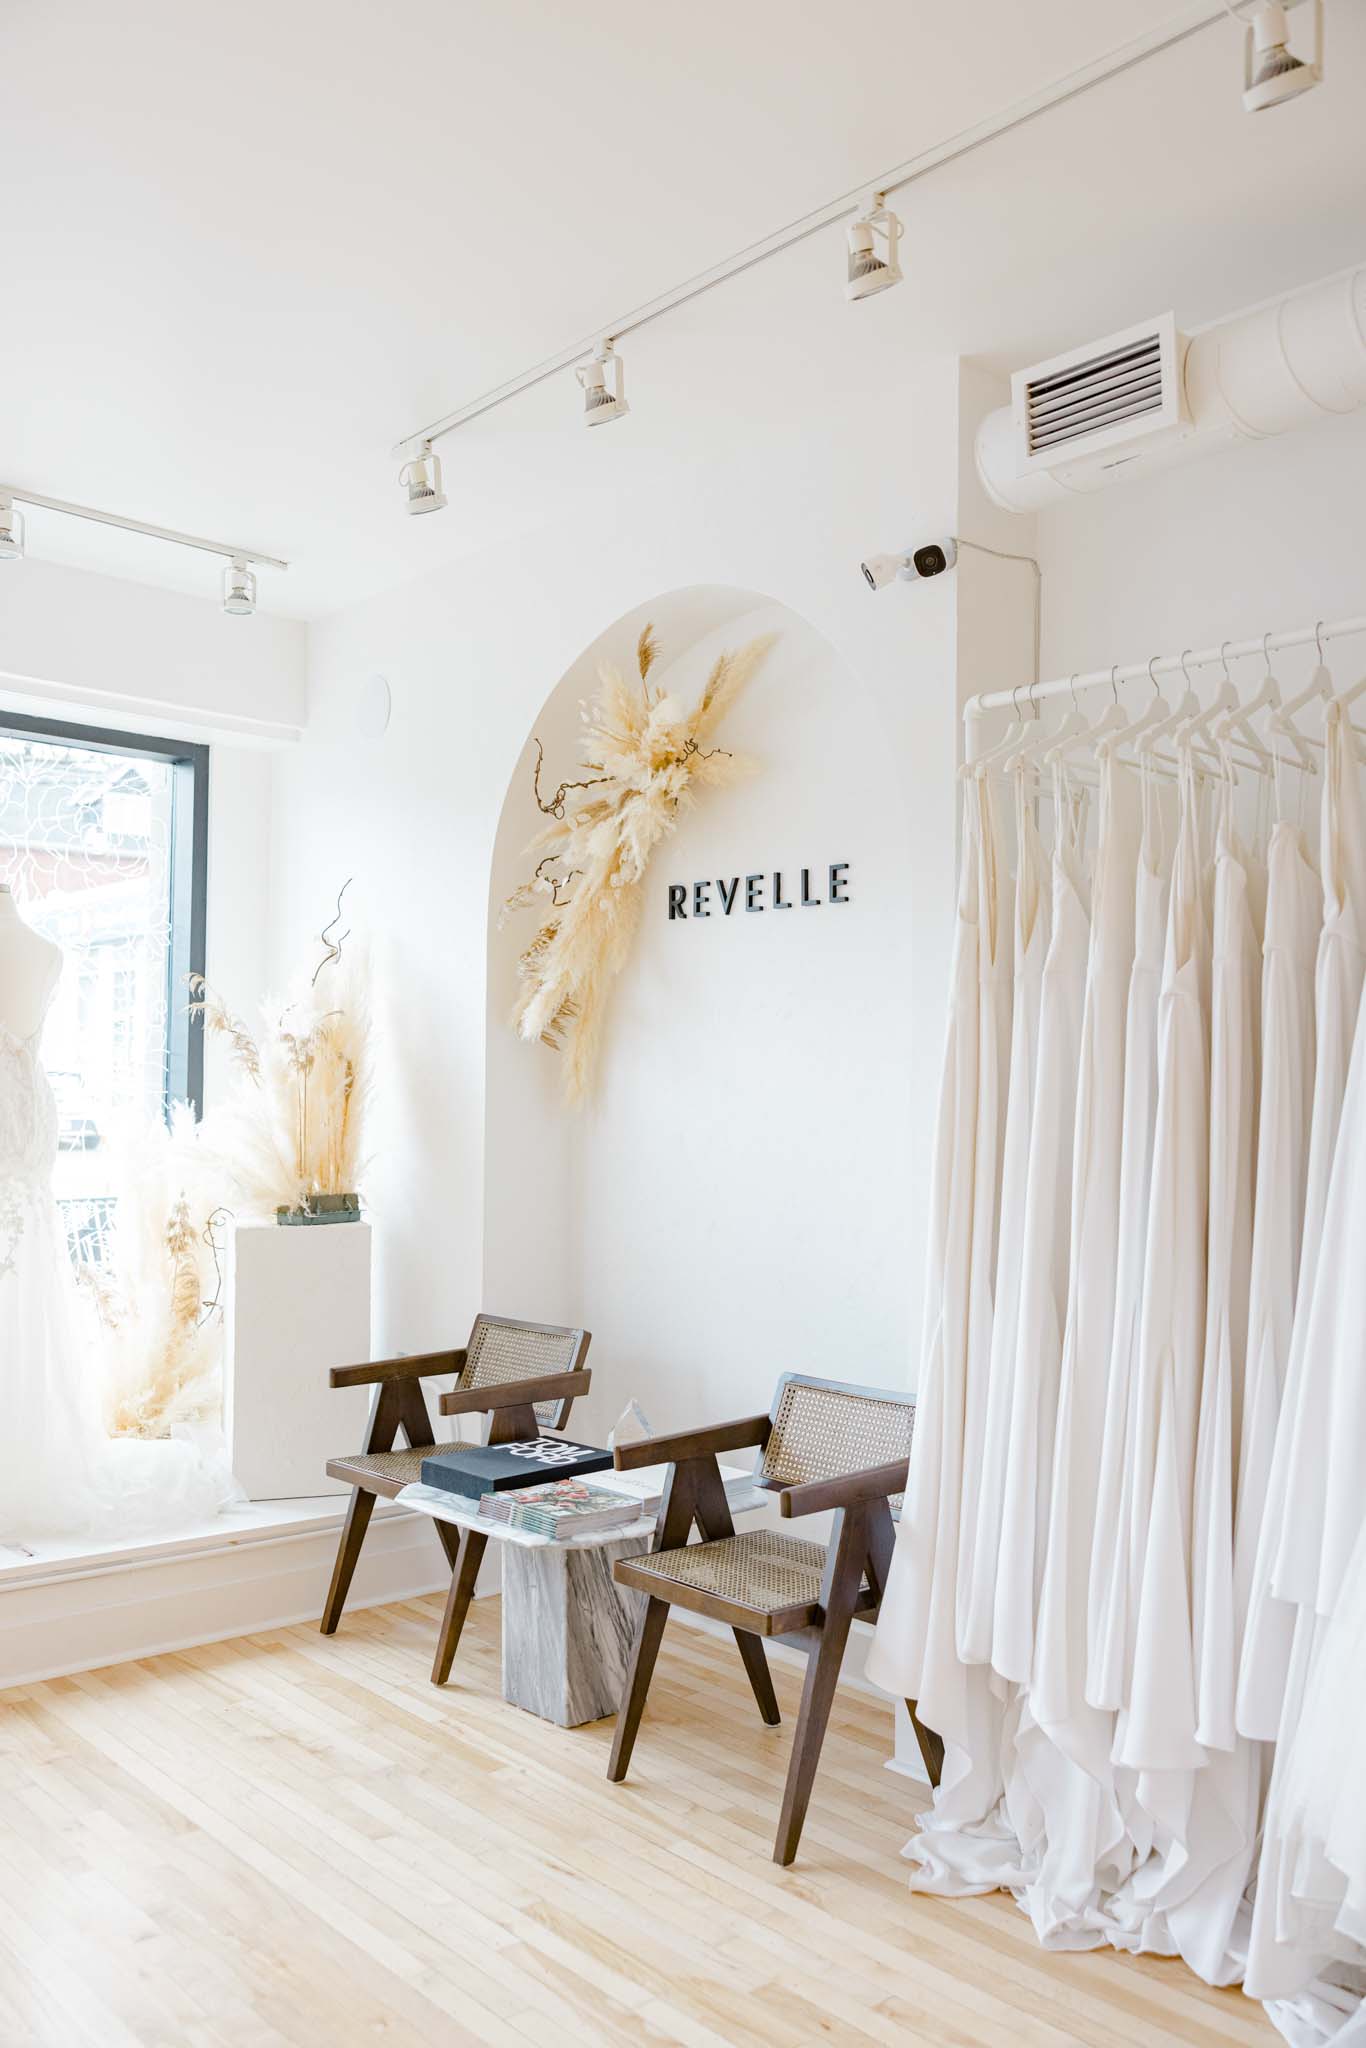 Revelle Bridal Boutique Dress Rack Window Entrance photo by Grey Loft Studio